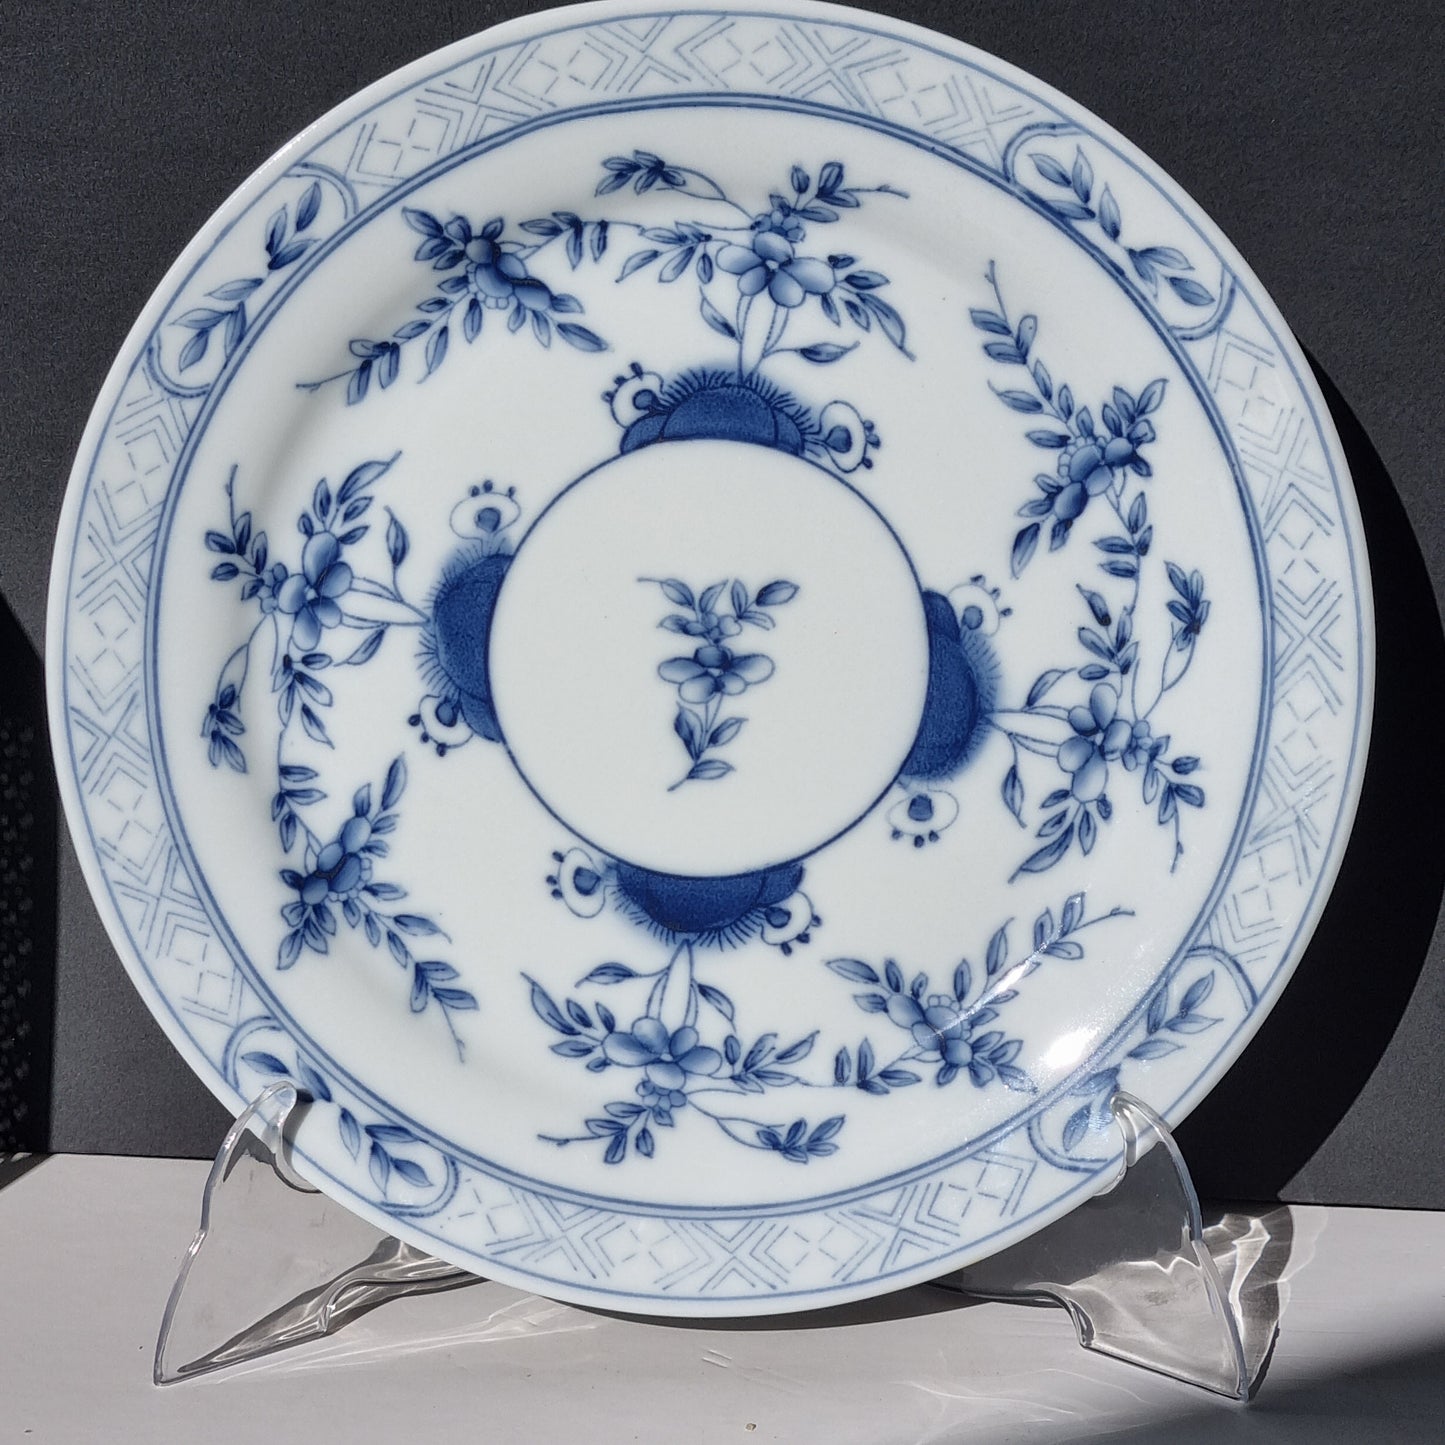 6 bajoplatos de porcelana blue and white